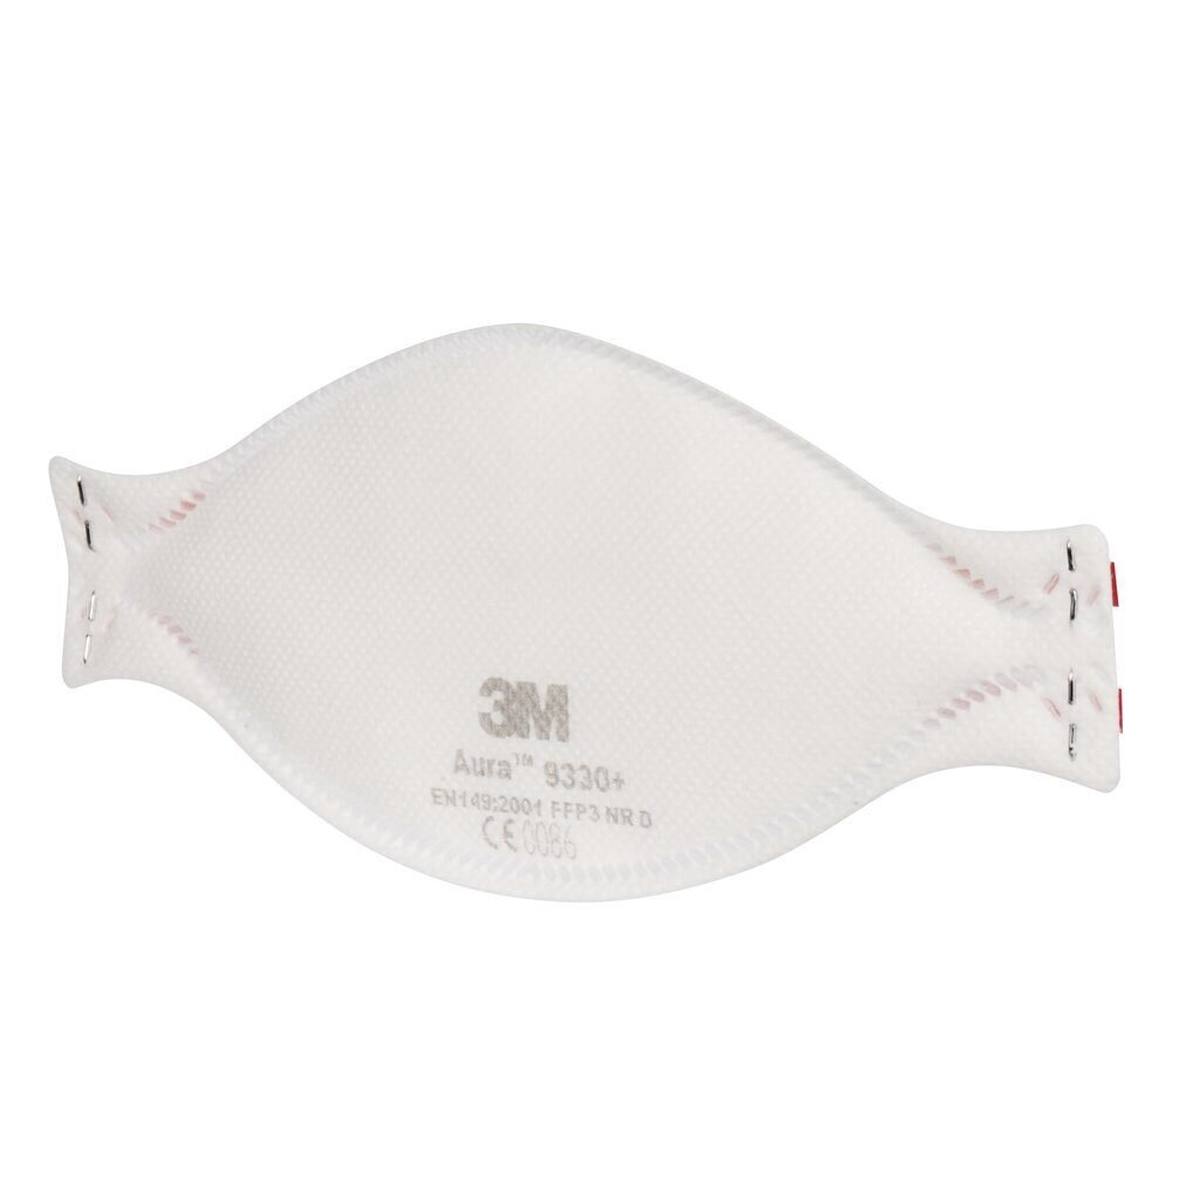 3M 9330+ Aura Masque de protection respiratoire FFP3, jusqu'à 30 fois la valeur limite (emballage individuel hygiénique)